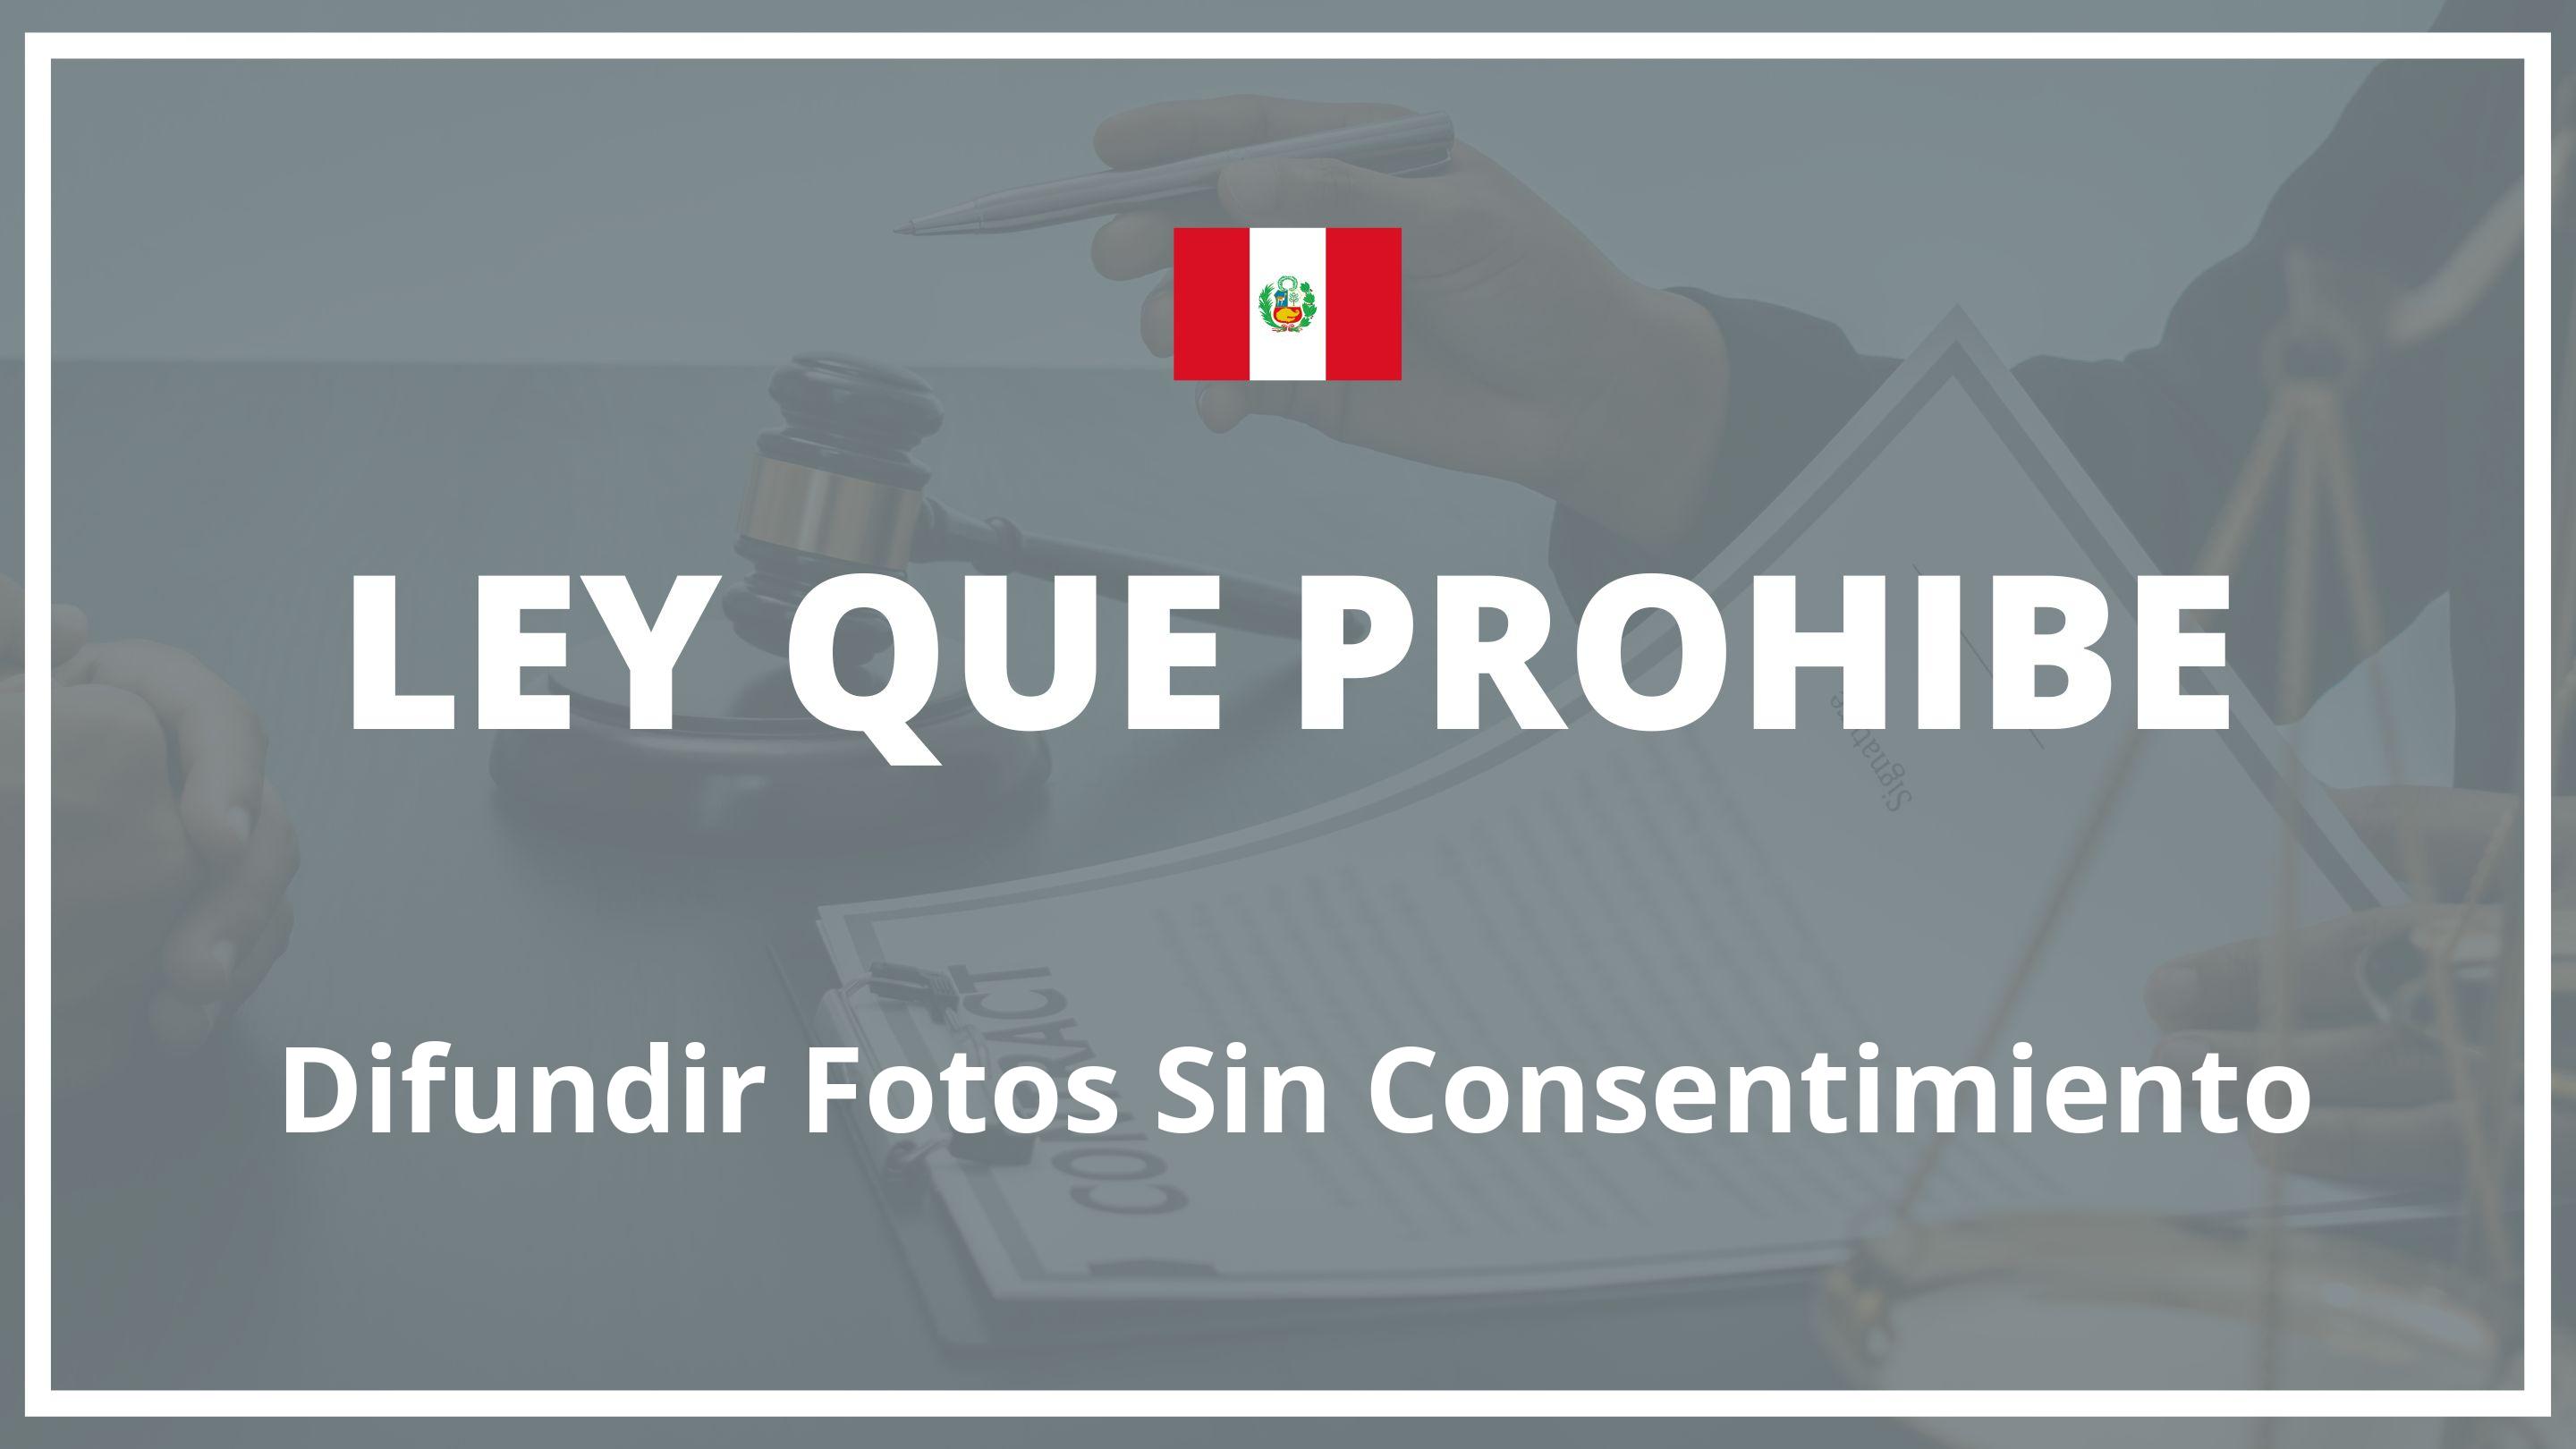 Ley Que Prohibe Difundir Fotos Sin Consentimiento Peru 6670